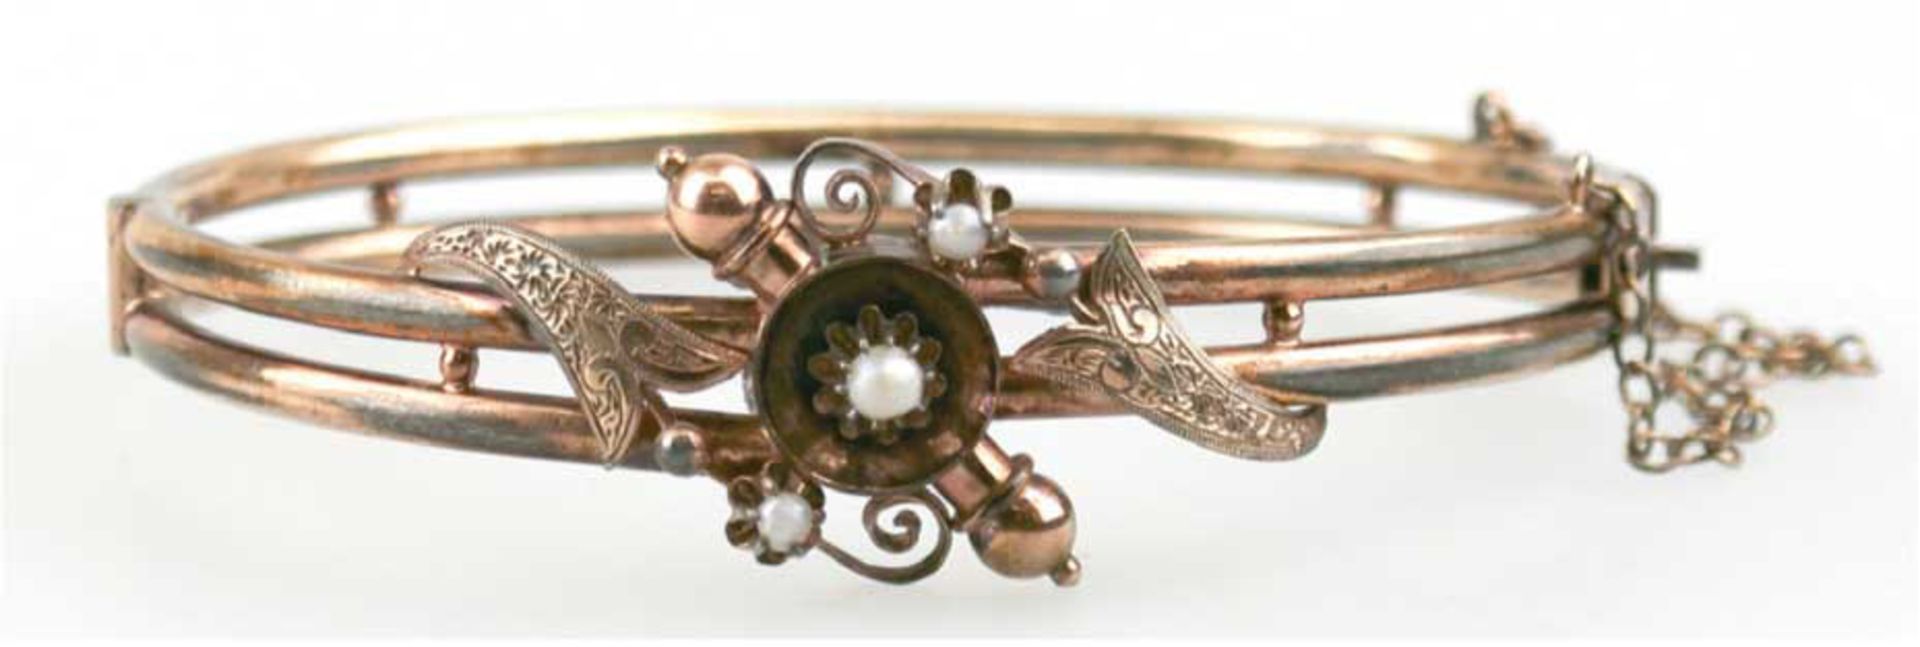 Jugendstil-Armreif, Golddouble, Perlen, Innenmaß ca. 5,8 x 5,4 cm